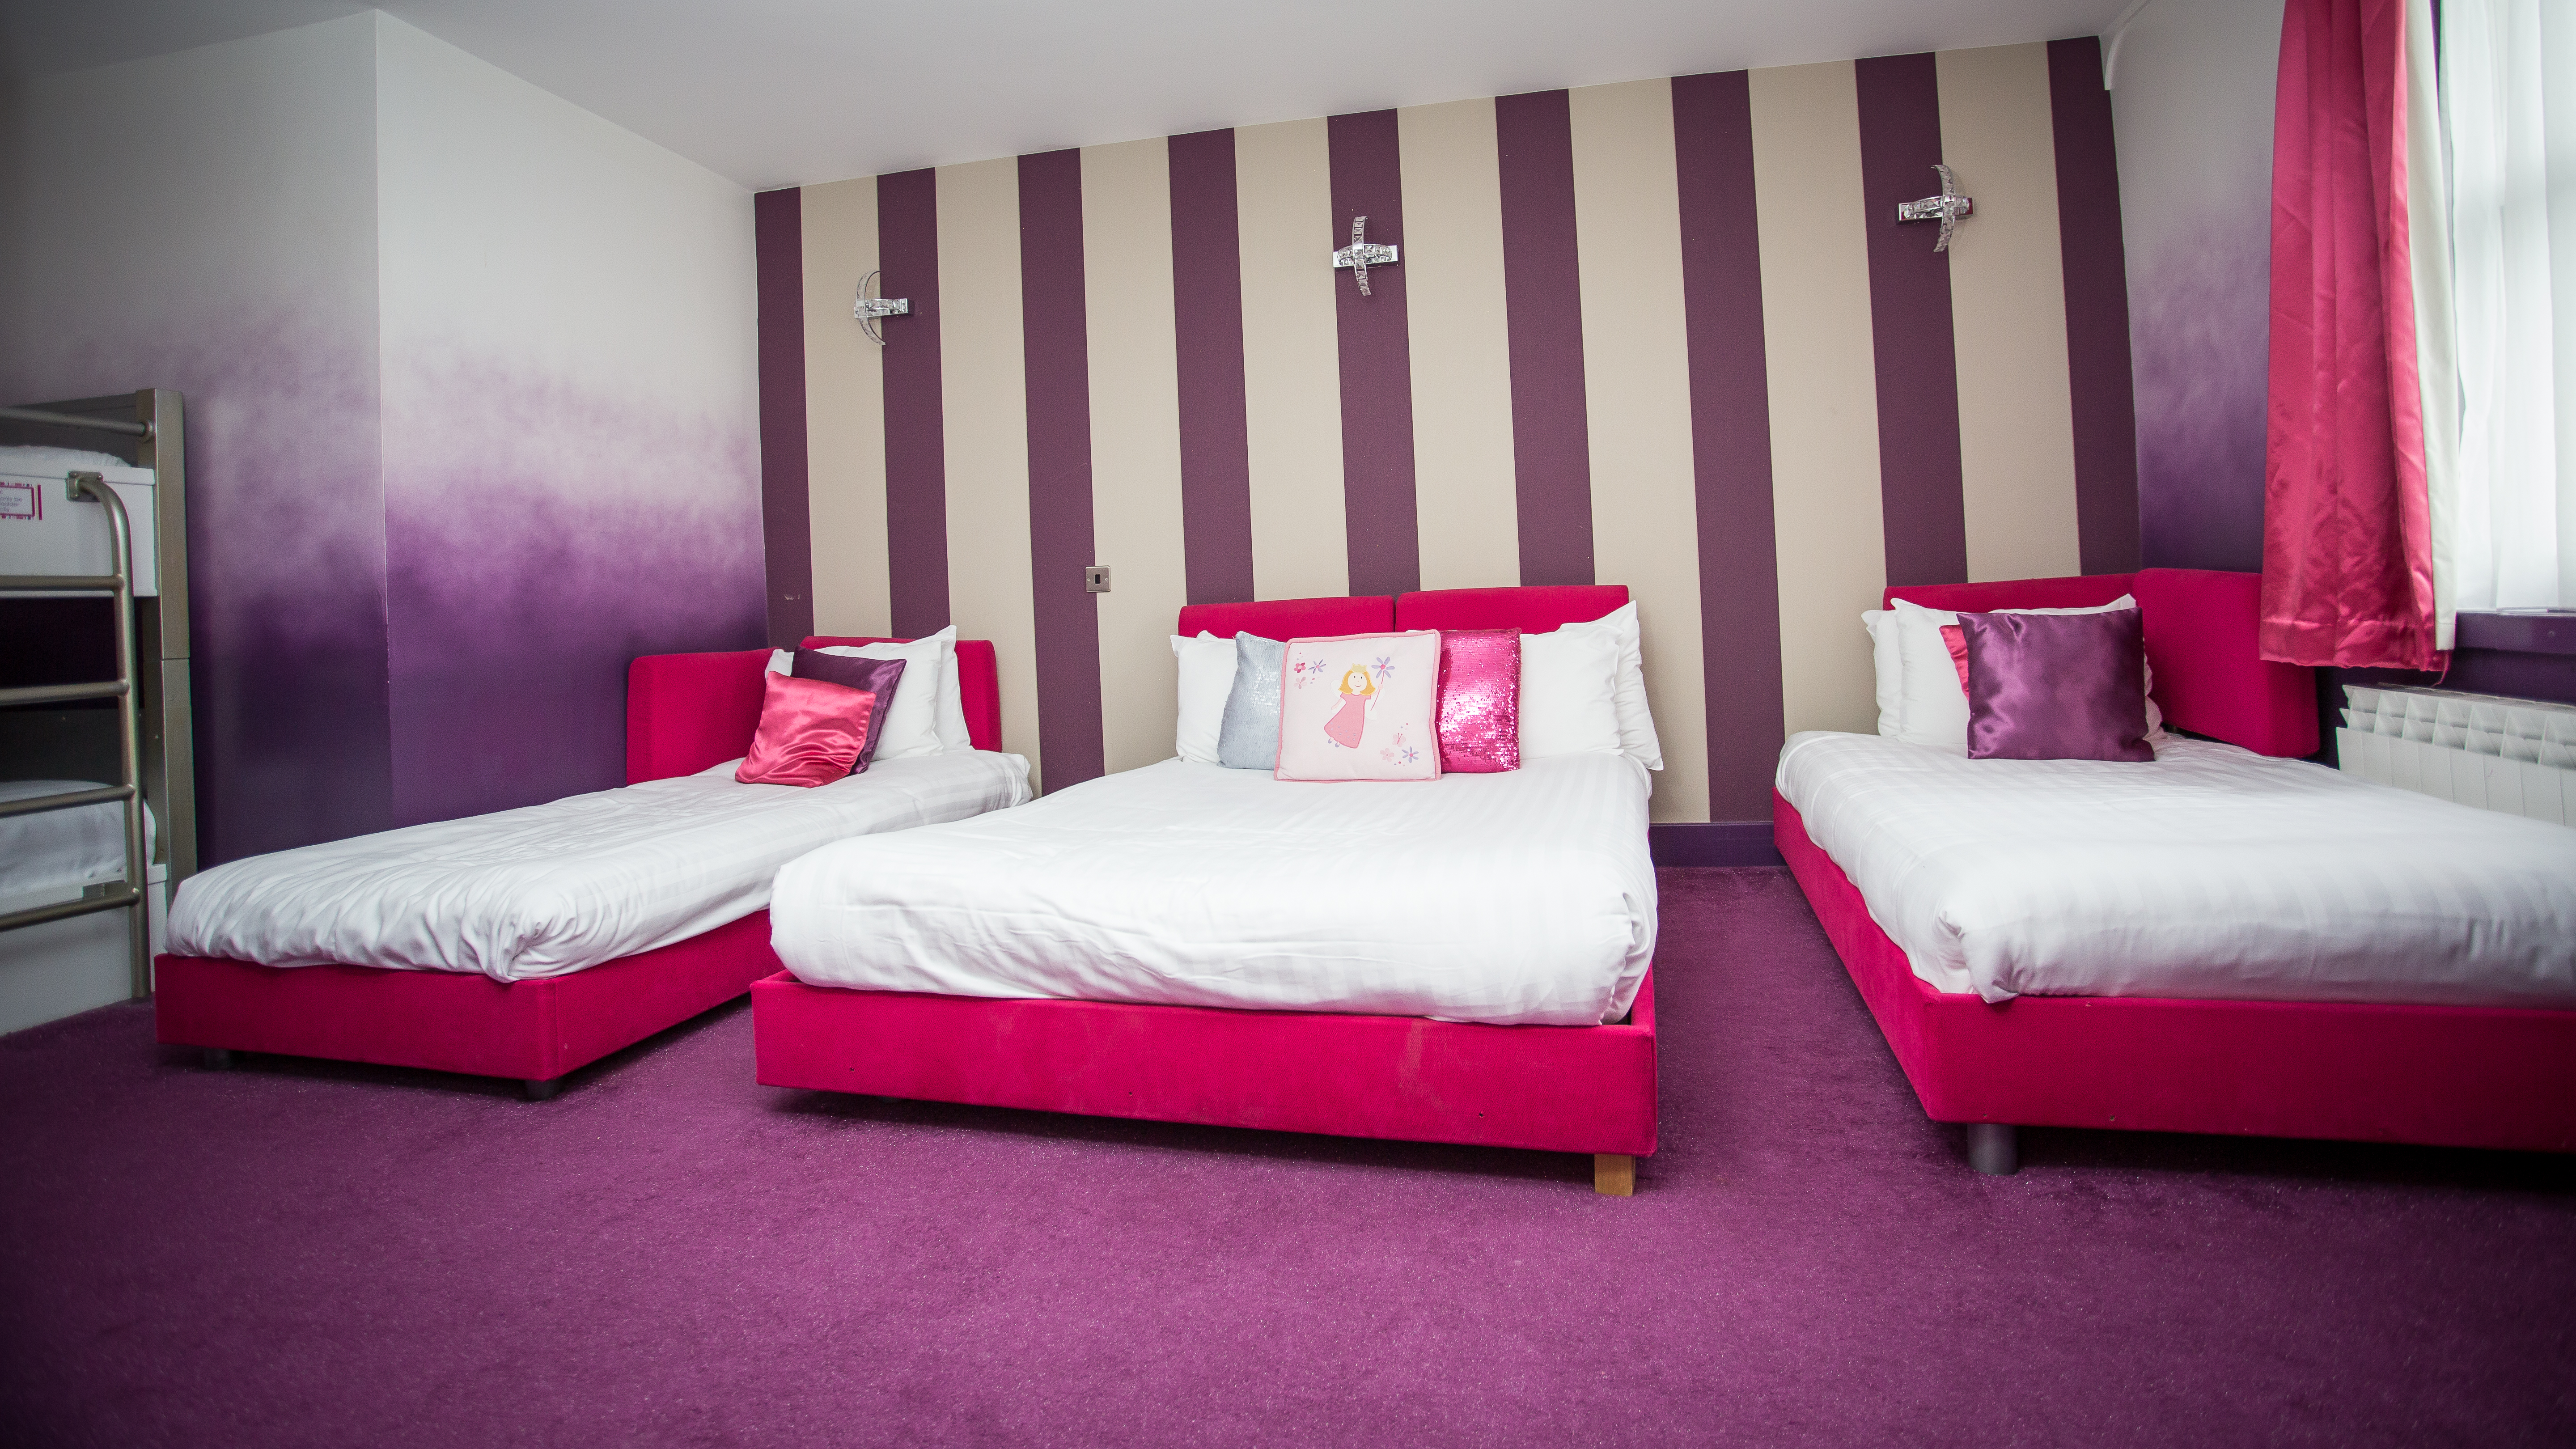 Pink & purple sleepover room beds